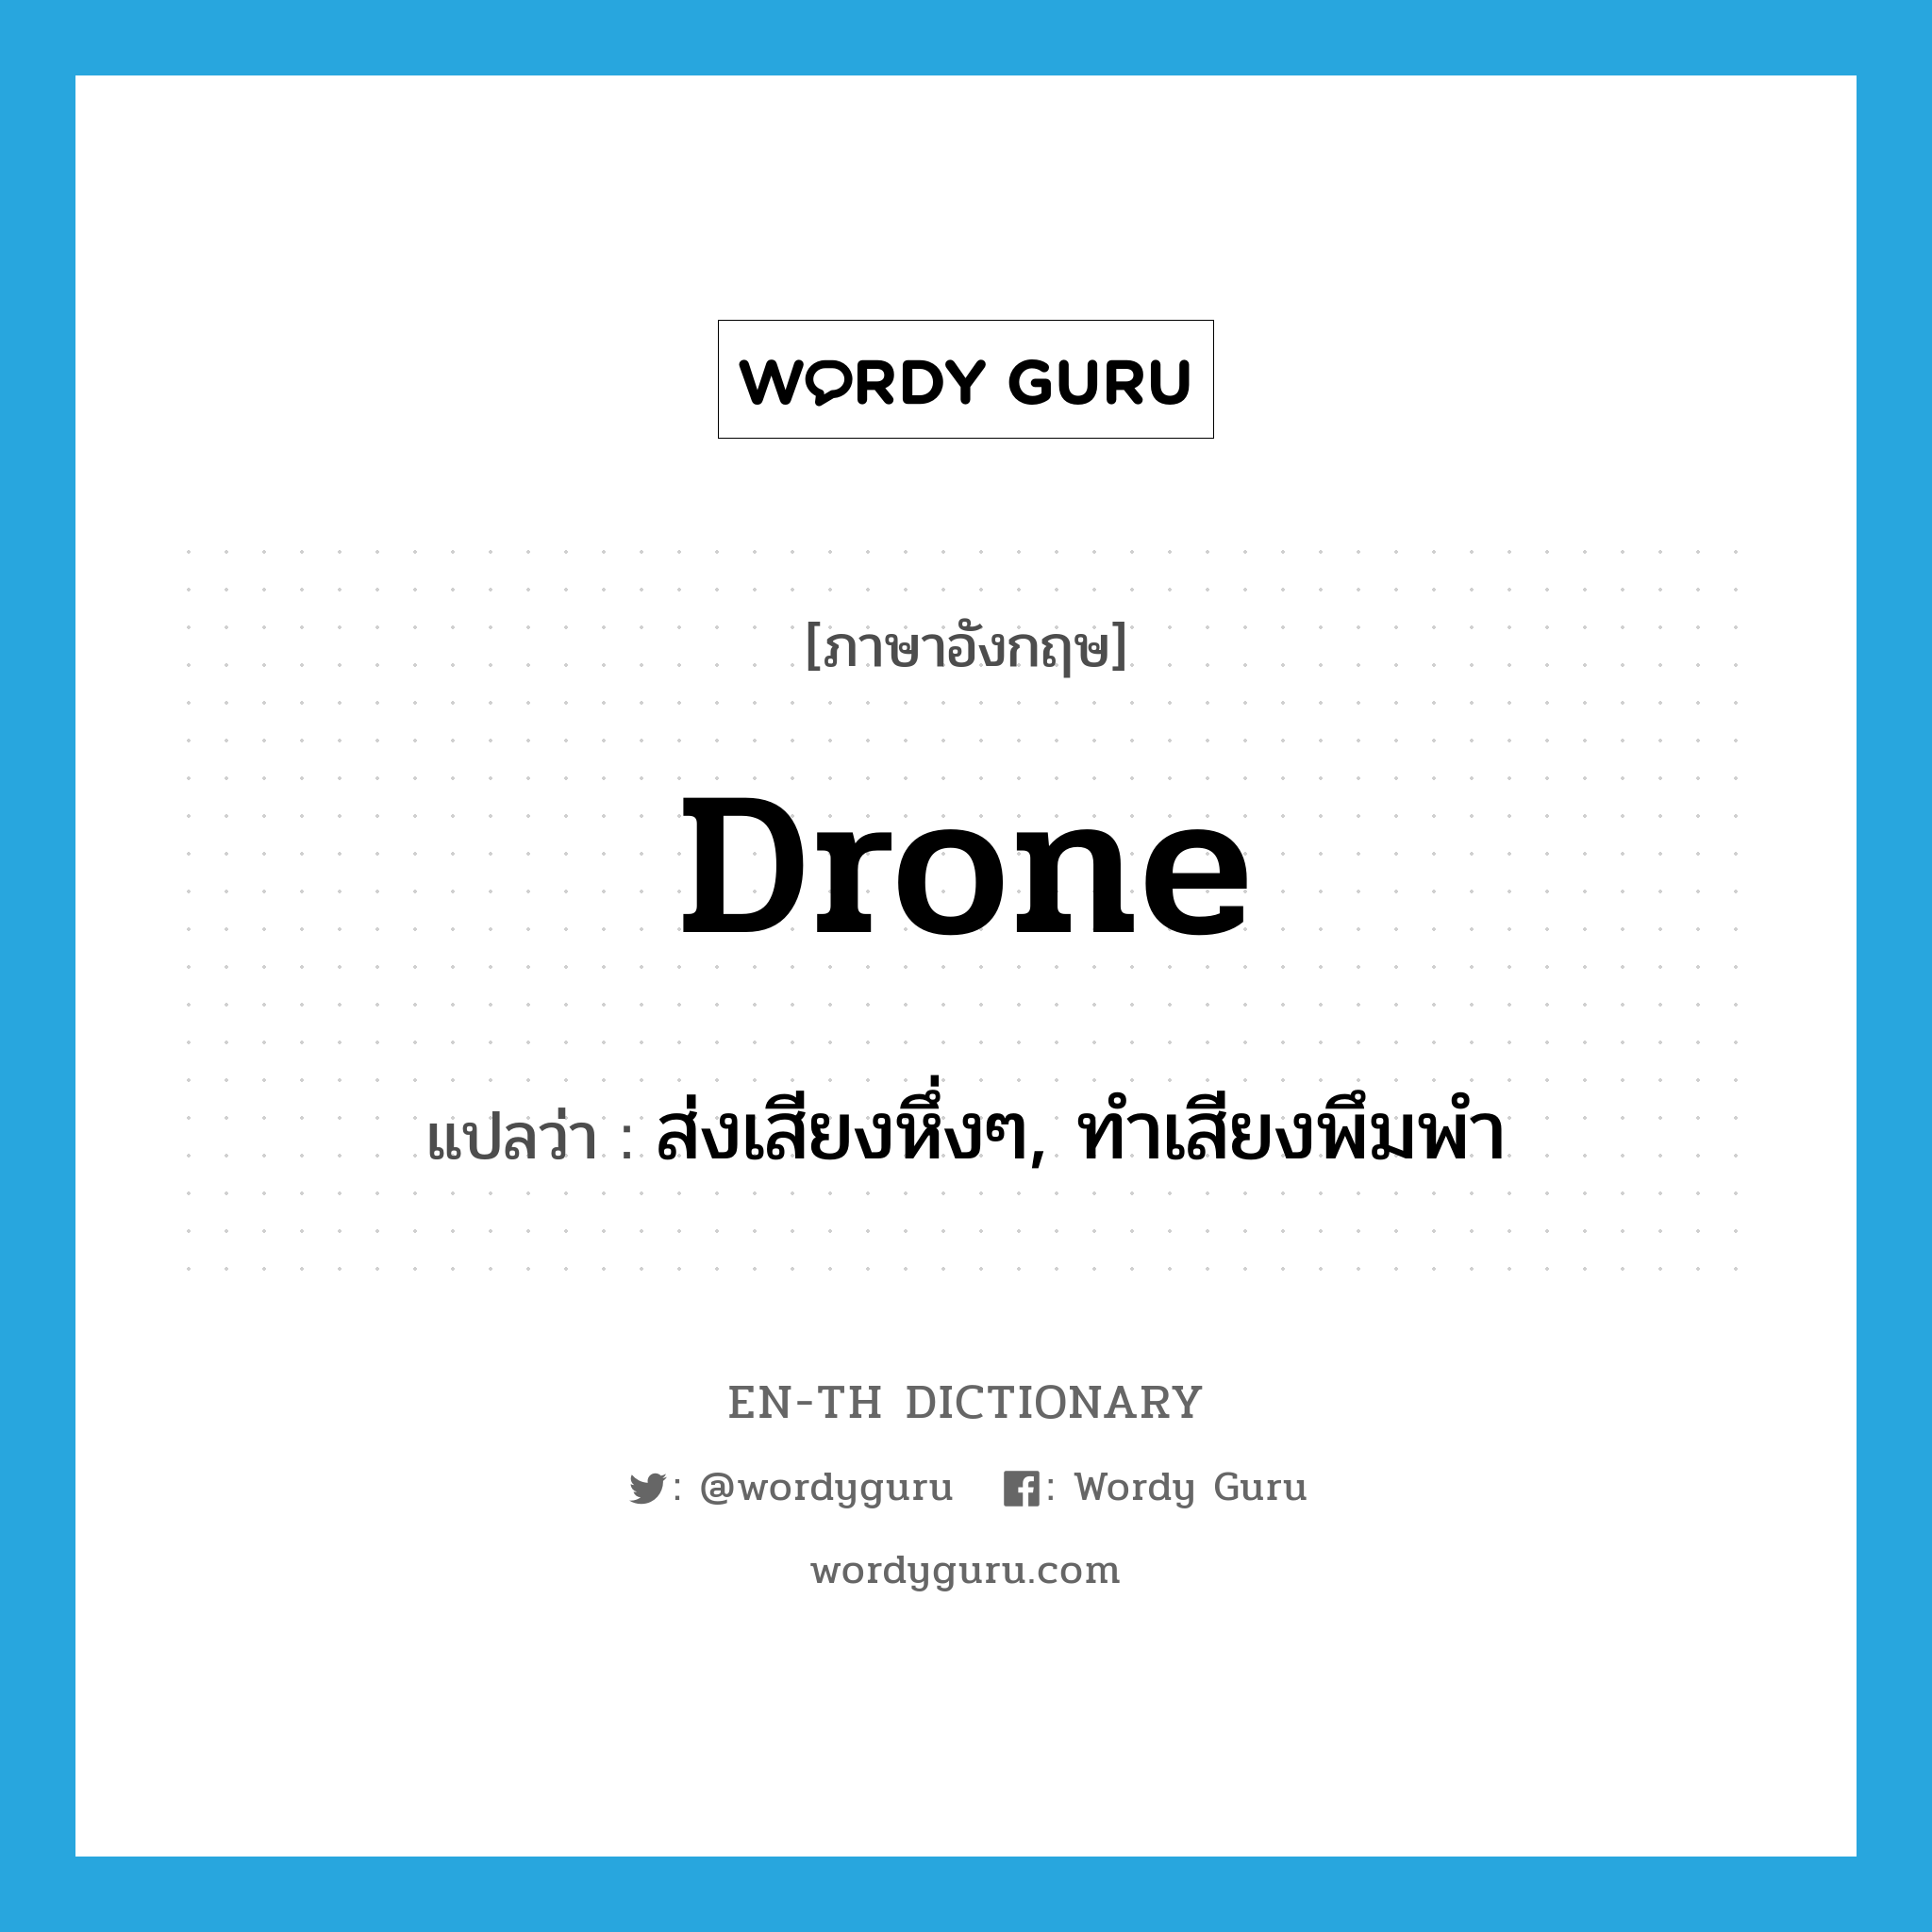 ส่งเสียงหึ่งๆ, ทำเสียงพึมพำ ภาษาอังกฤษ?, คำศัพท์ภาษาอังกฤษ ส่งเสียงหึ่งๆ, ทำเสียงพึมพำ แปลว่า drone ประเภท VI หมวด VI